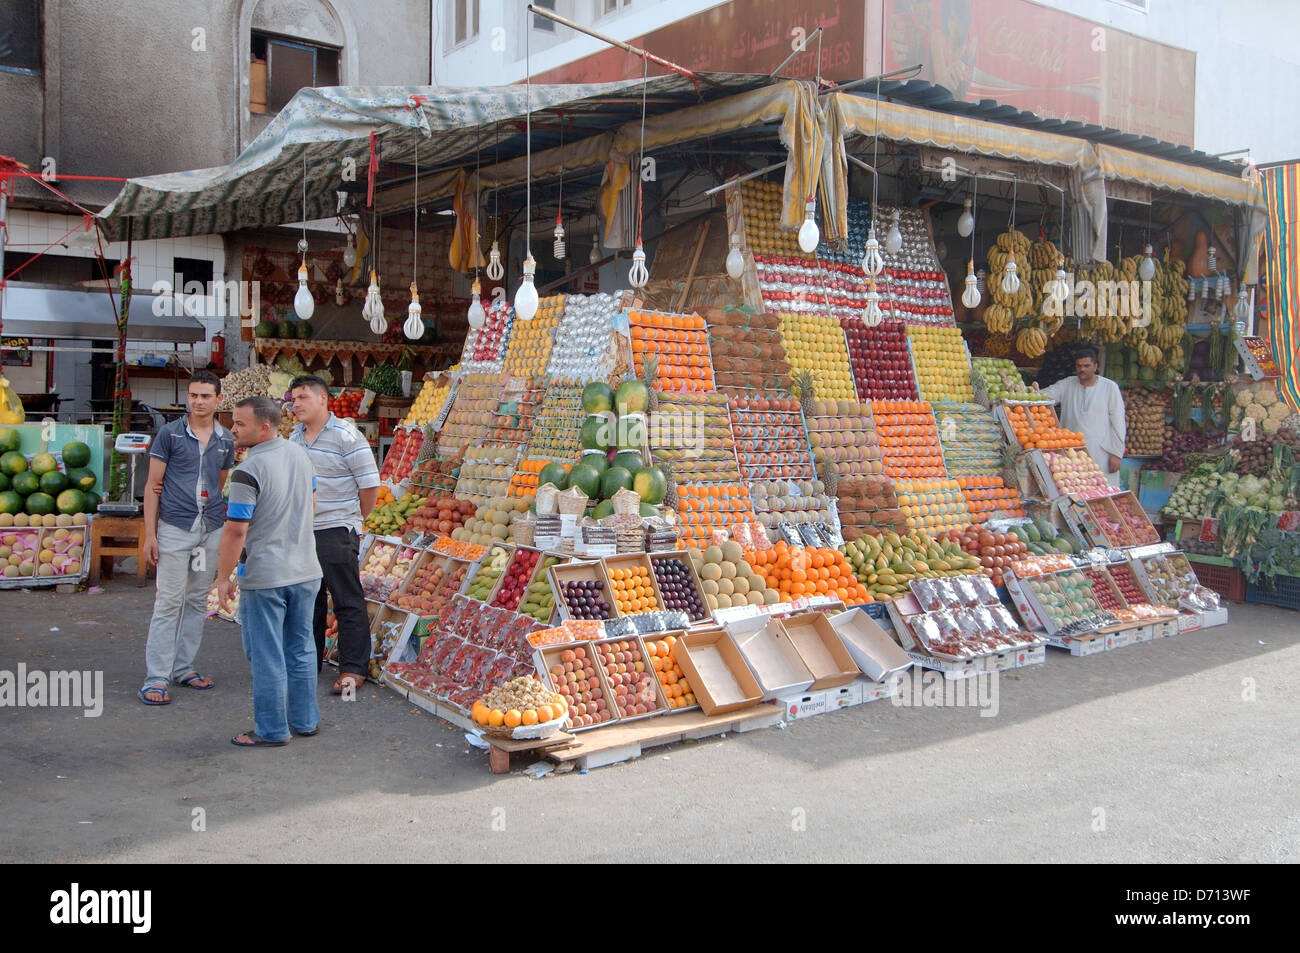 Vente de fruits sur le marché, du Vieux Marché, Charm el-Cheikh, péninsule du Sinaï, Égypte Banque D'Images